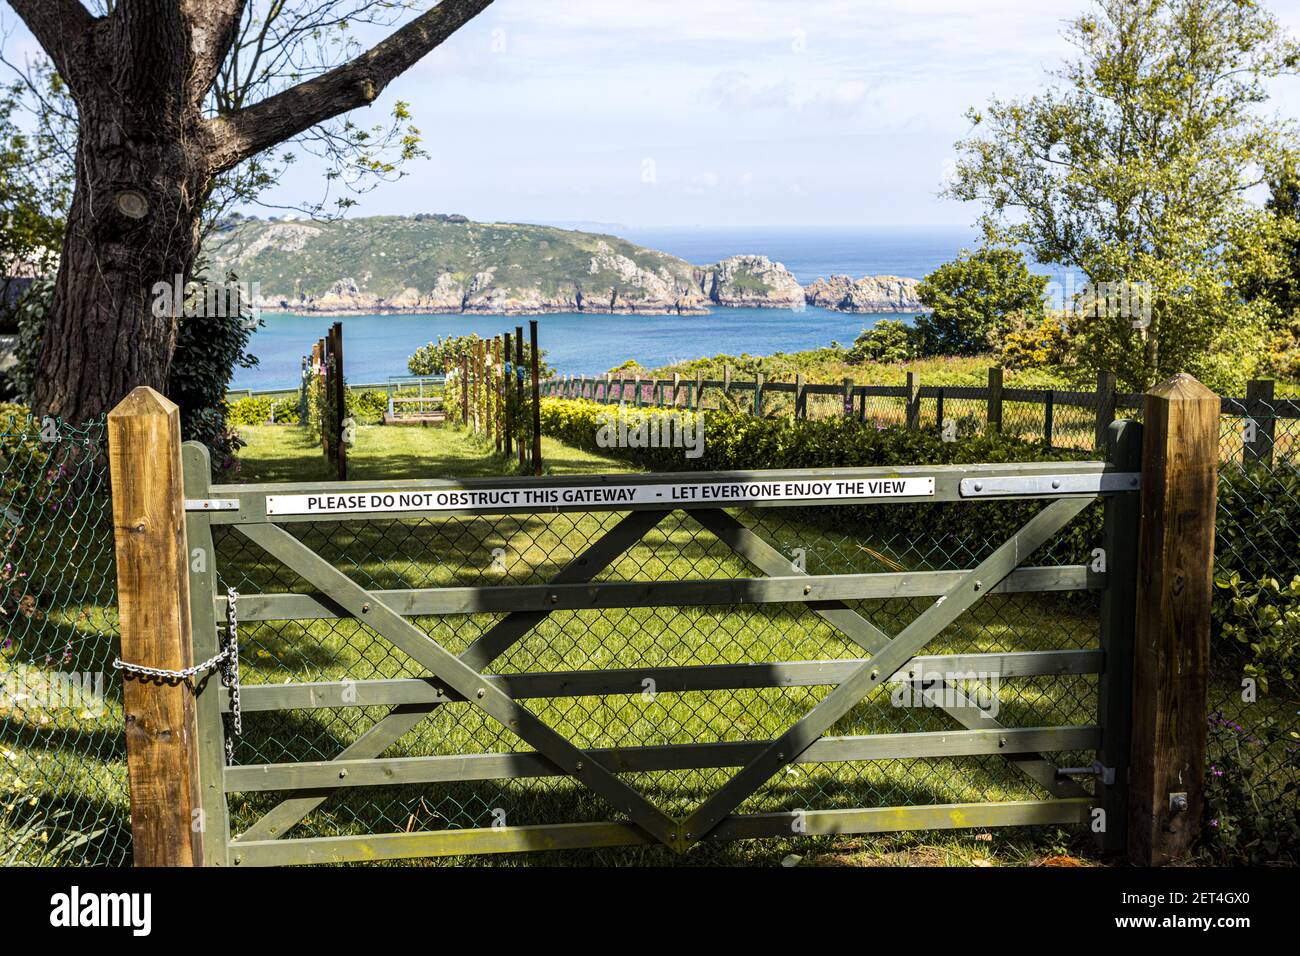 Die wunderschöne zerklüftete Südküste von Guernsey gegenüber dem Garten eines gedankenvollen Gutsbesitzers - EIN Blick auf Saints Bay von der Icart Road, Guernsey, Stockfoto